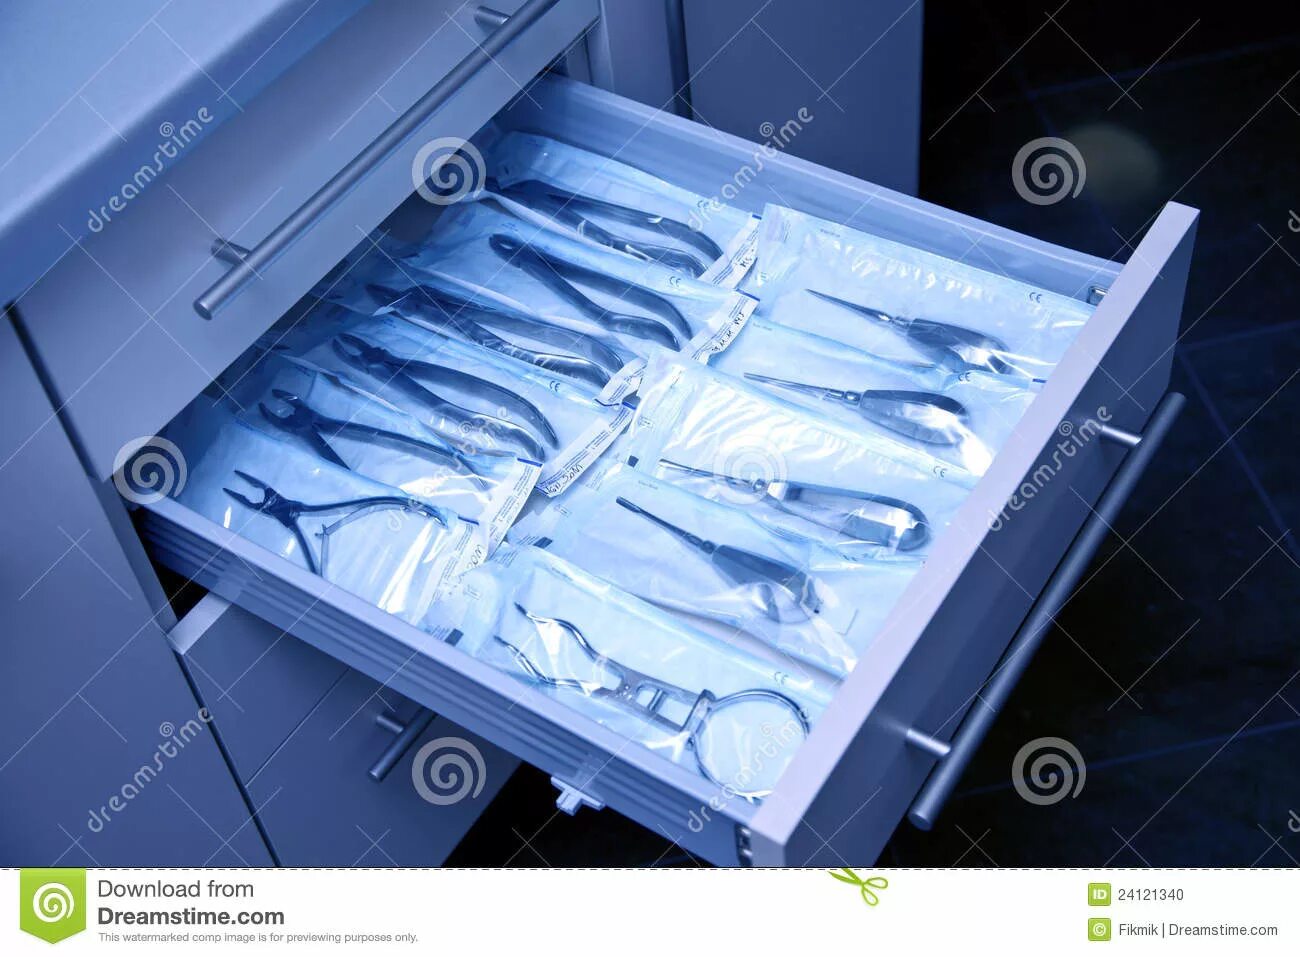 Шкаф для хранения стоматологических инструментов. Шкаф для хирургических инструментов. Хранение хирургических инструментов. Хирургический шкаф для хранения инструментов.